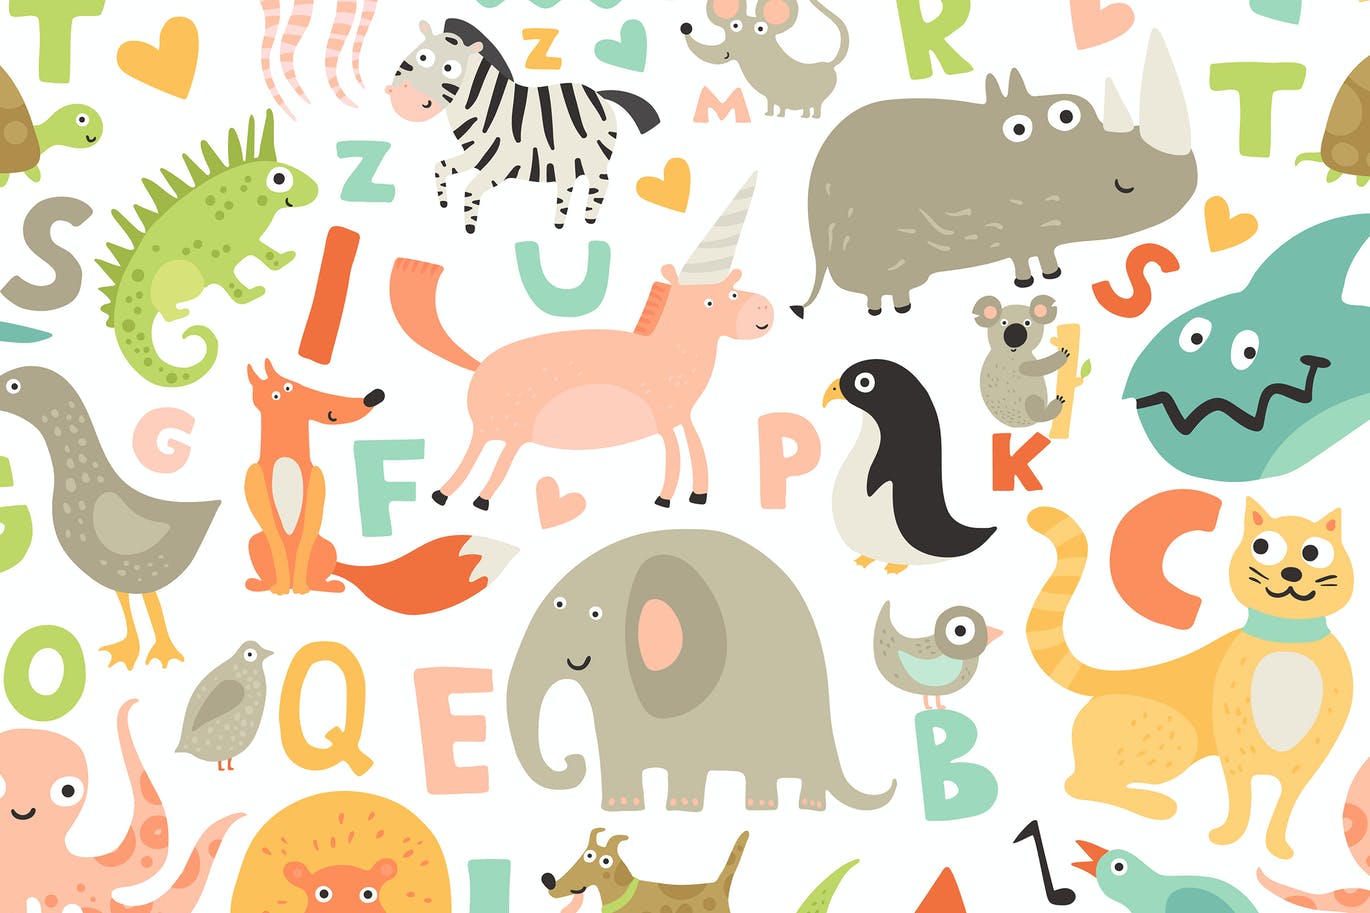 有趣可爱的手绘卡通动物角色和字母表无缝背景图案 (AI,EPS,JPG,PNG)